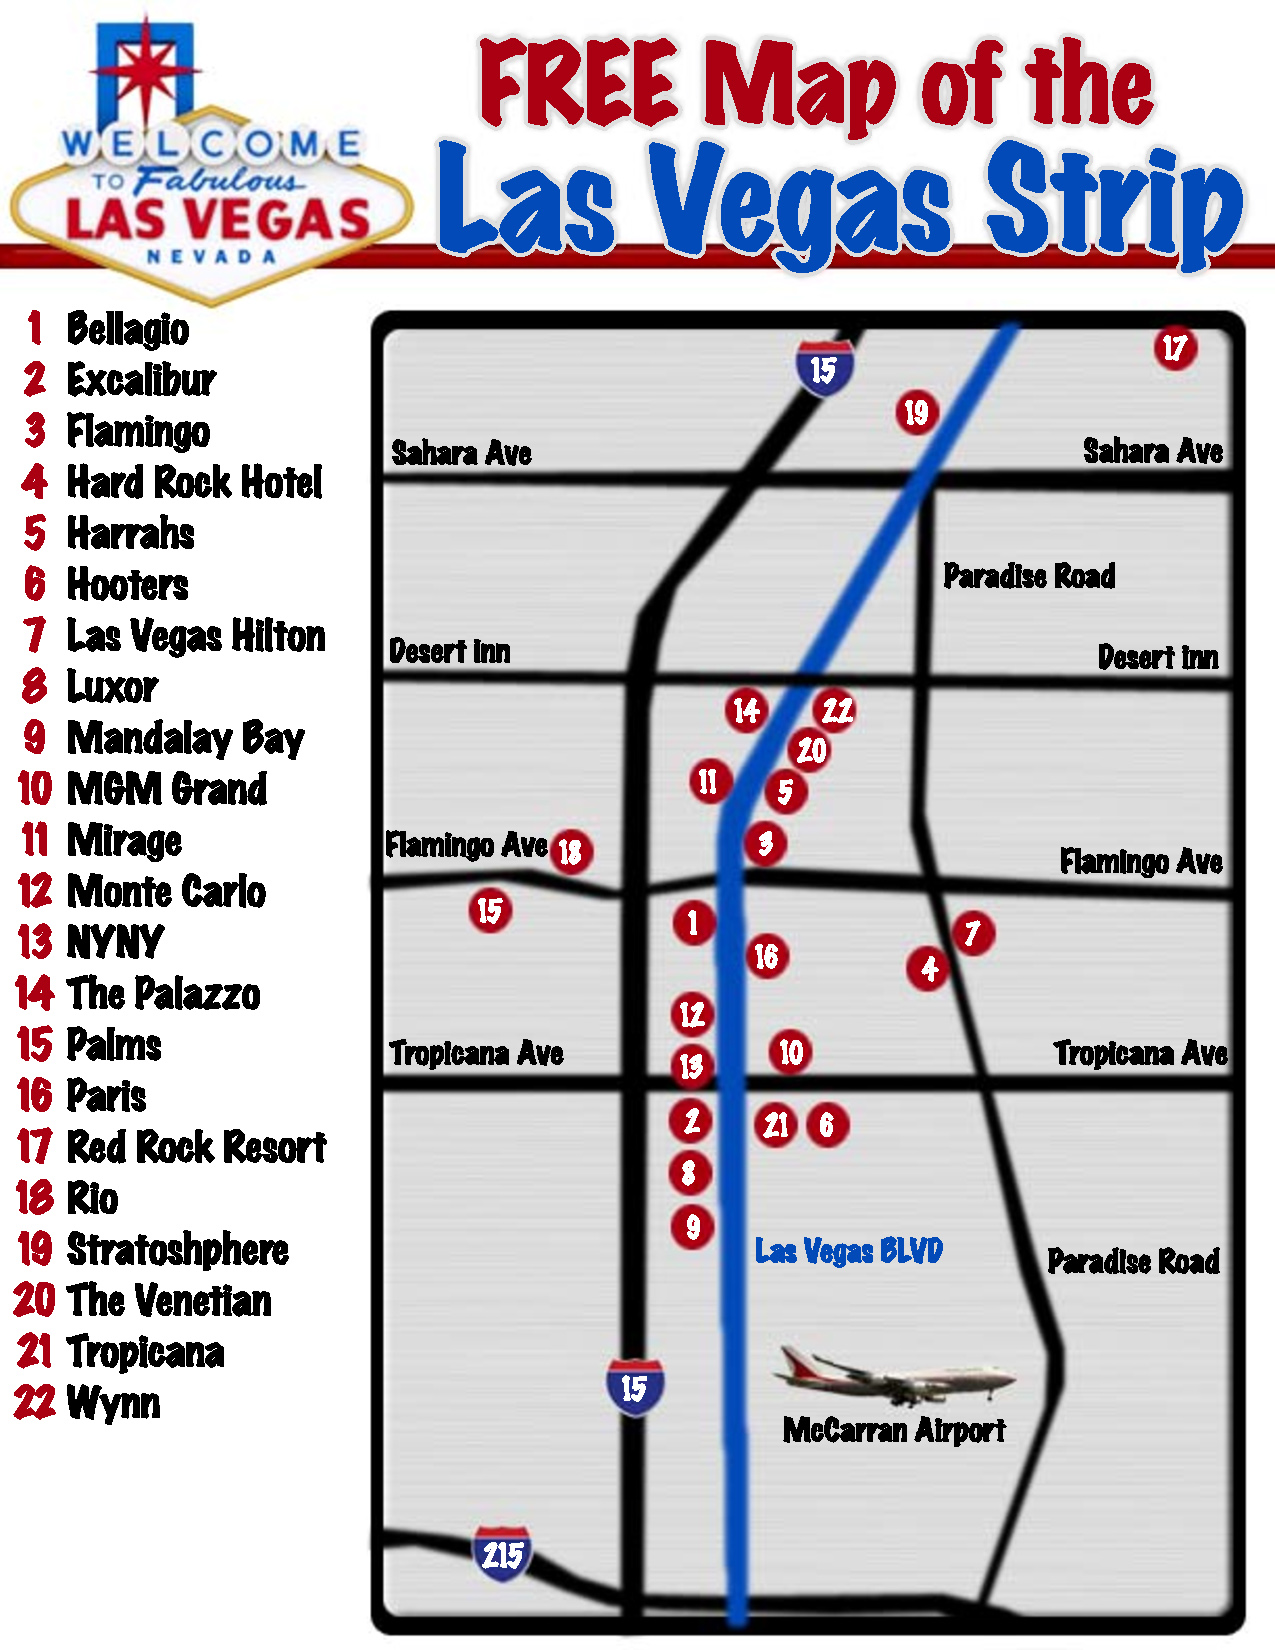 The Las Vegas Strip Map 